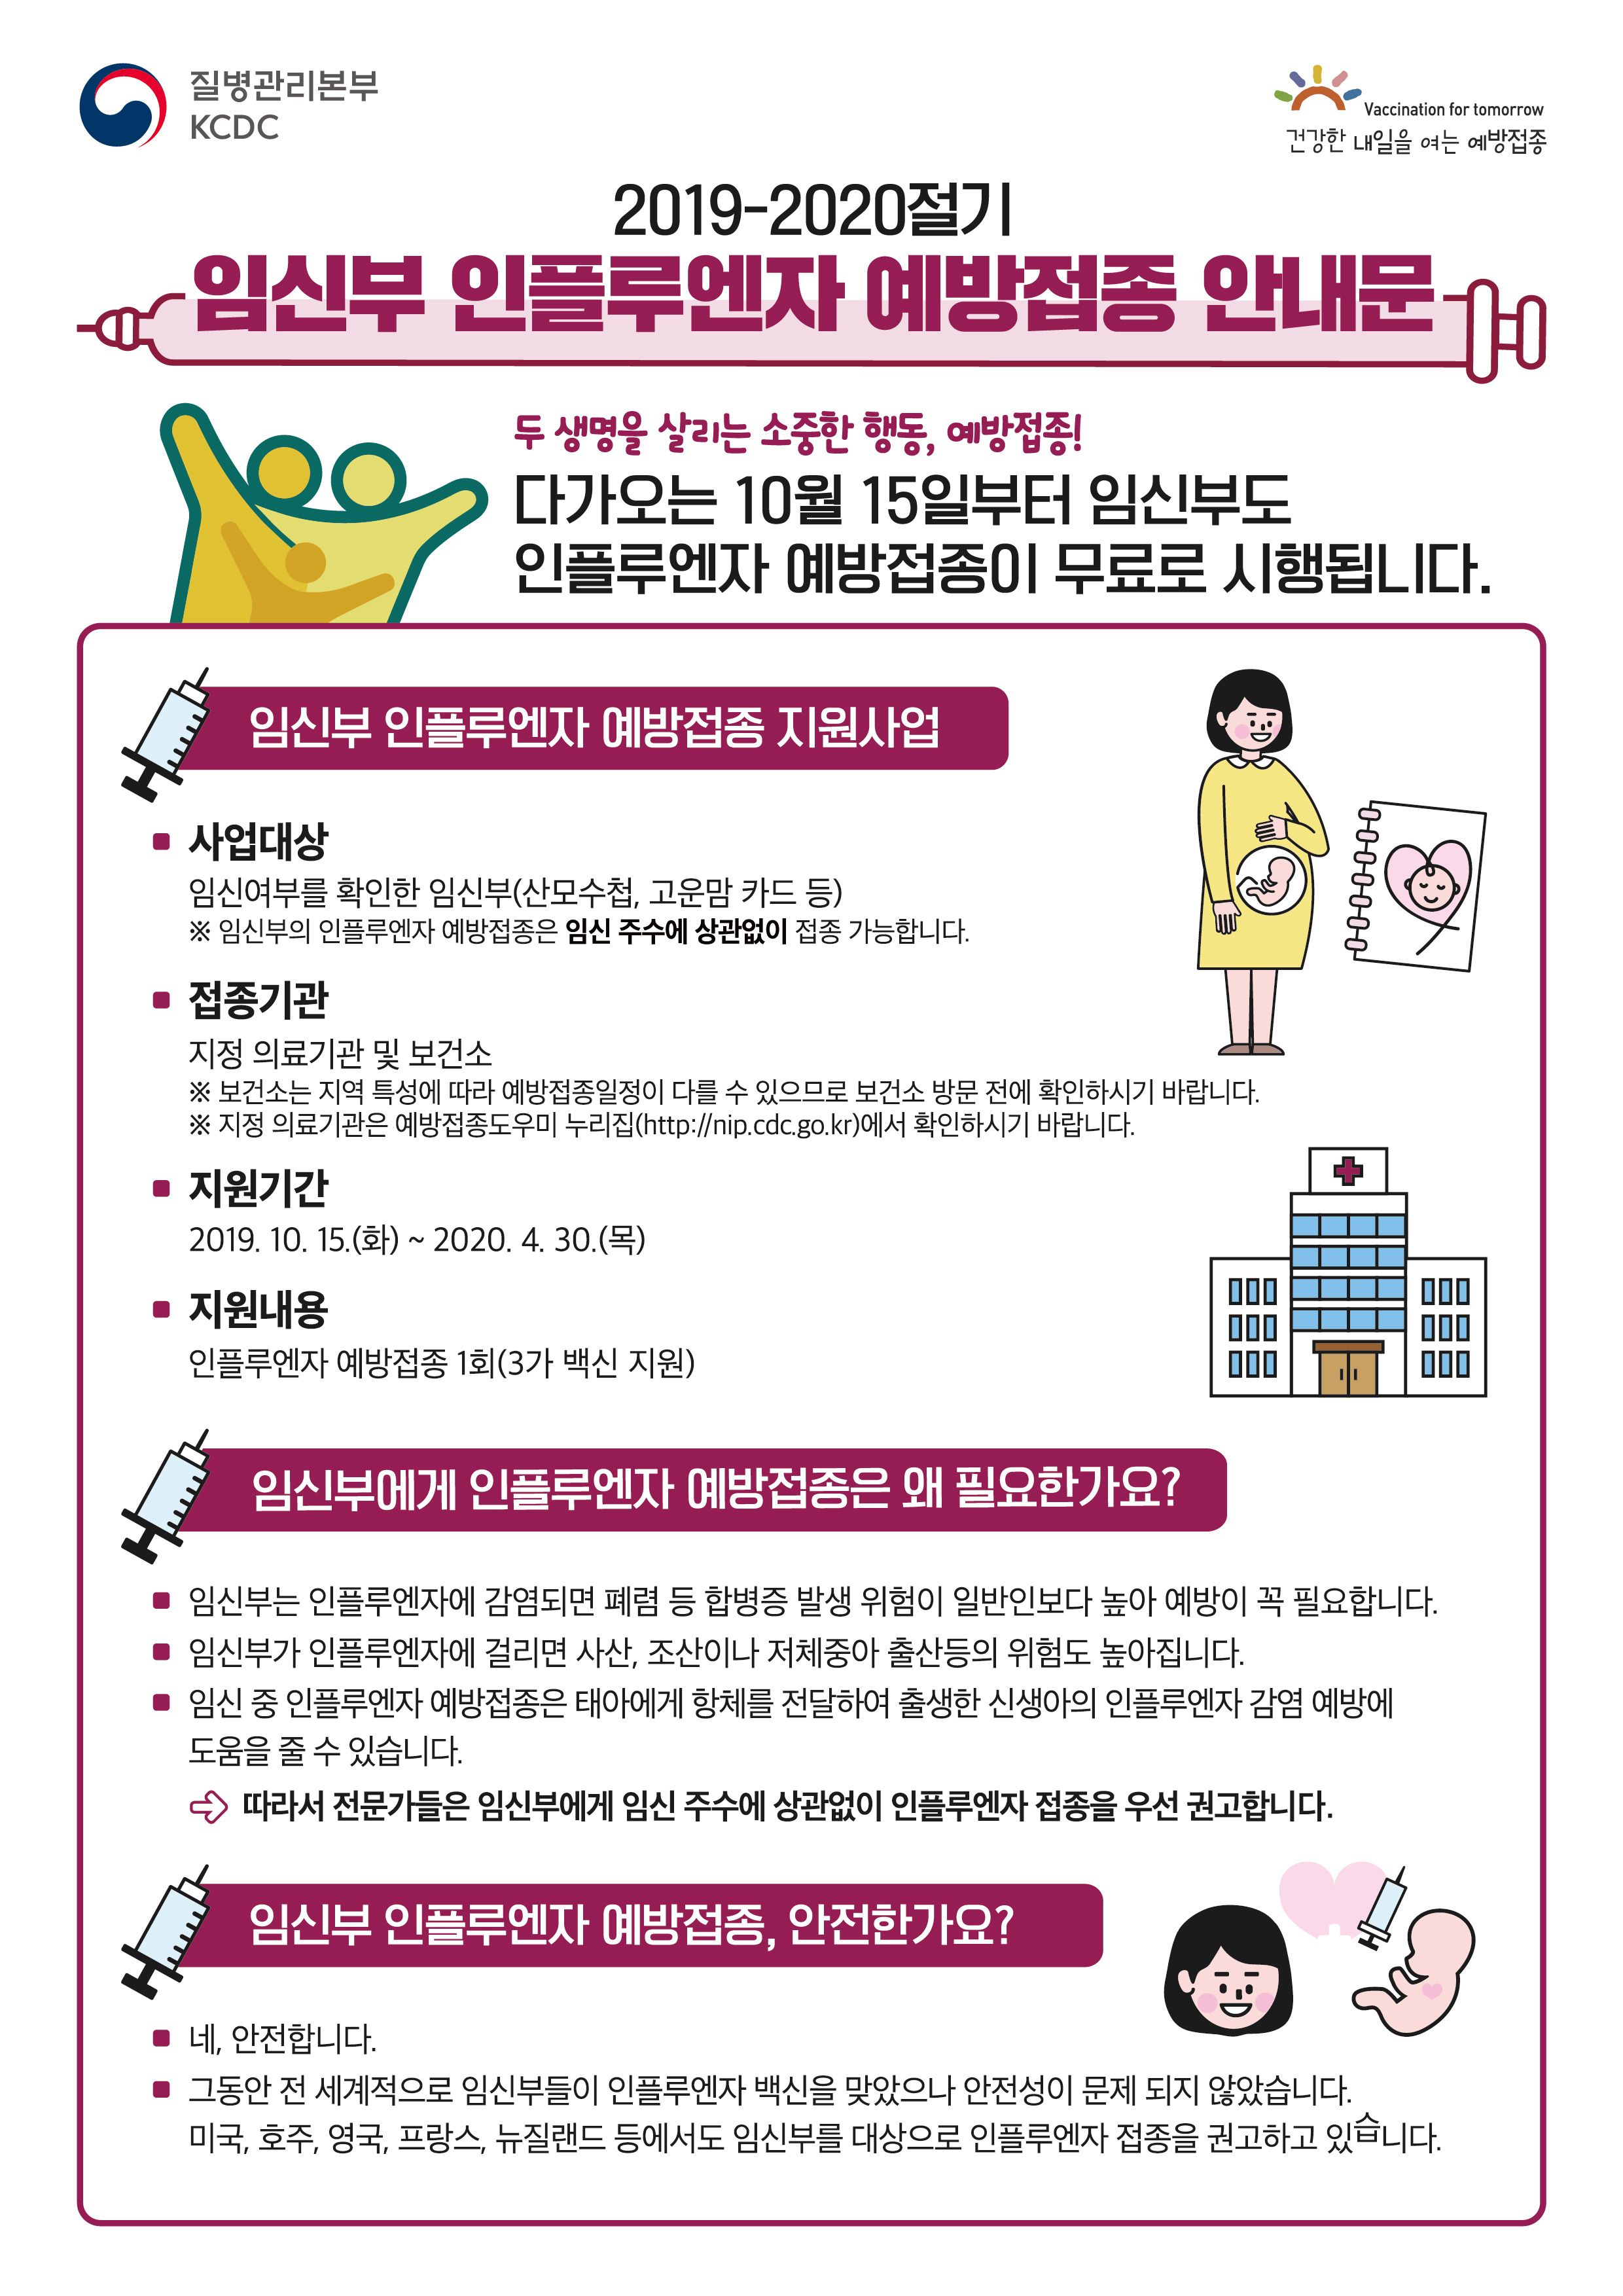 [공유] 2019-2020절기 인플루엔자 국가예방접종 지원사업 임신부 안내문